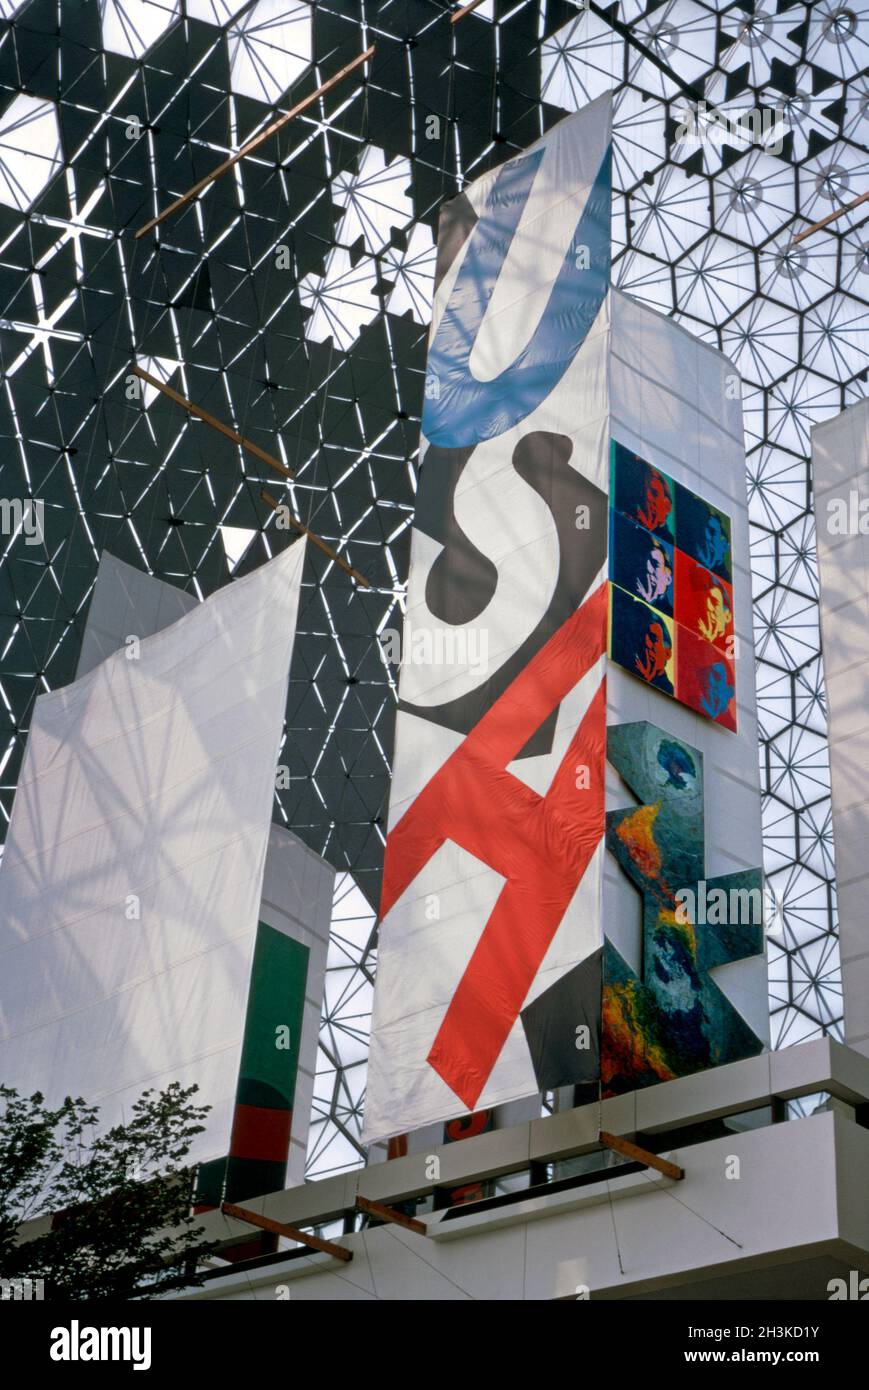 Im Inneren des amerikanischen Pavillons auf der Expo 67, Montreal, Quebec, Kanada im Jahr 1967. Auf einem vertikalen Banner mit den Buchstaben USA sind auch zwei Kunstwerke zu sehen – (Mitte rechts) sechs riesige Selbstporträts des Pop-Künstlers Andy Warhol, darunter Jasper Johns’ ‘Dymaxion Map’. Der Pavillon der USA war eine geodätische Kuppel, die vom Architekten Richard Buckminster Fuller entworfen wurde. Die Attraktion lebte nach 1967 während der Sommermonate weiter und schloss schließlich 1981. Der Pavillon der USA ist heute das Biosphere, ein Museum, das der Umwelt gewidmet ist. Dieses Bild stammt aus einer alten Amateur-Farbtransparenz – einem Vintage-Foto aus den 1960er Jahren. Stockfoto